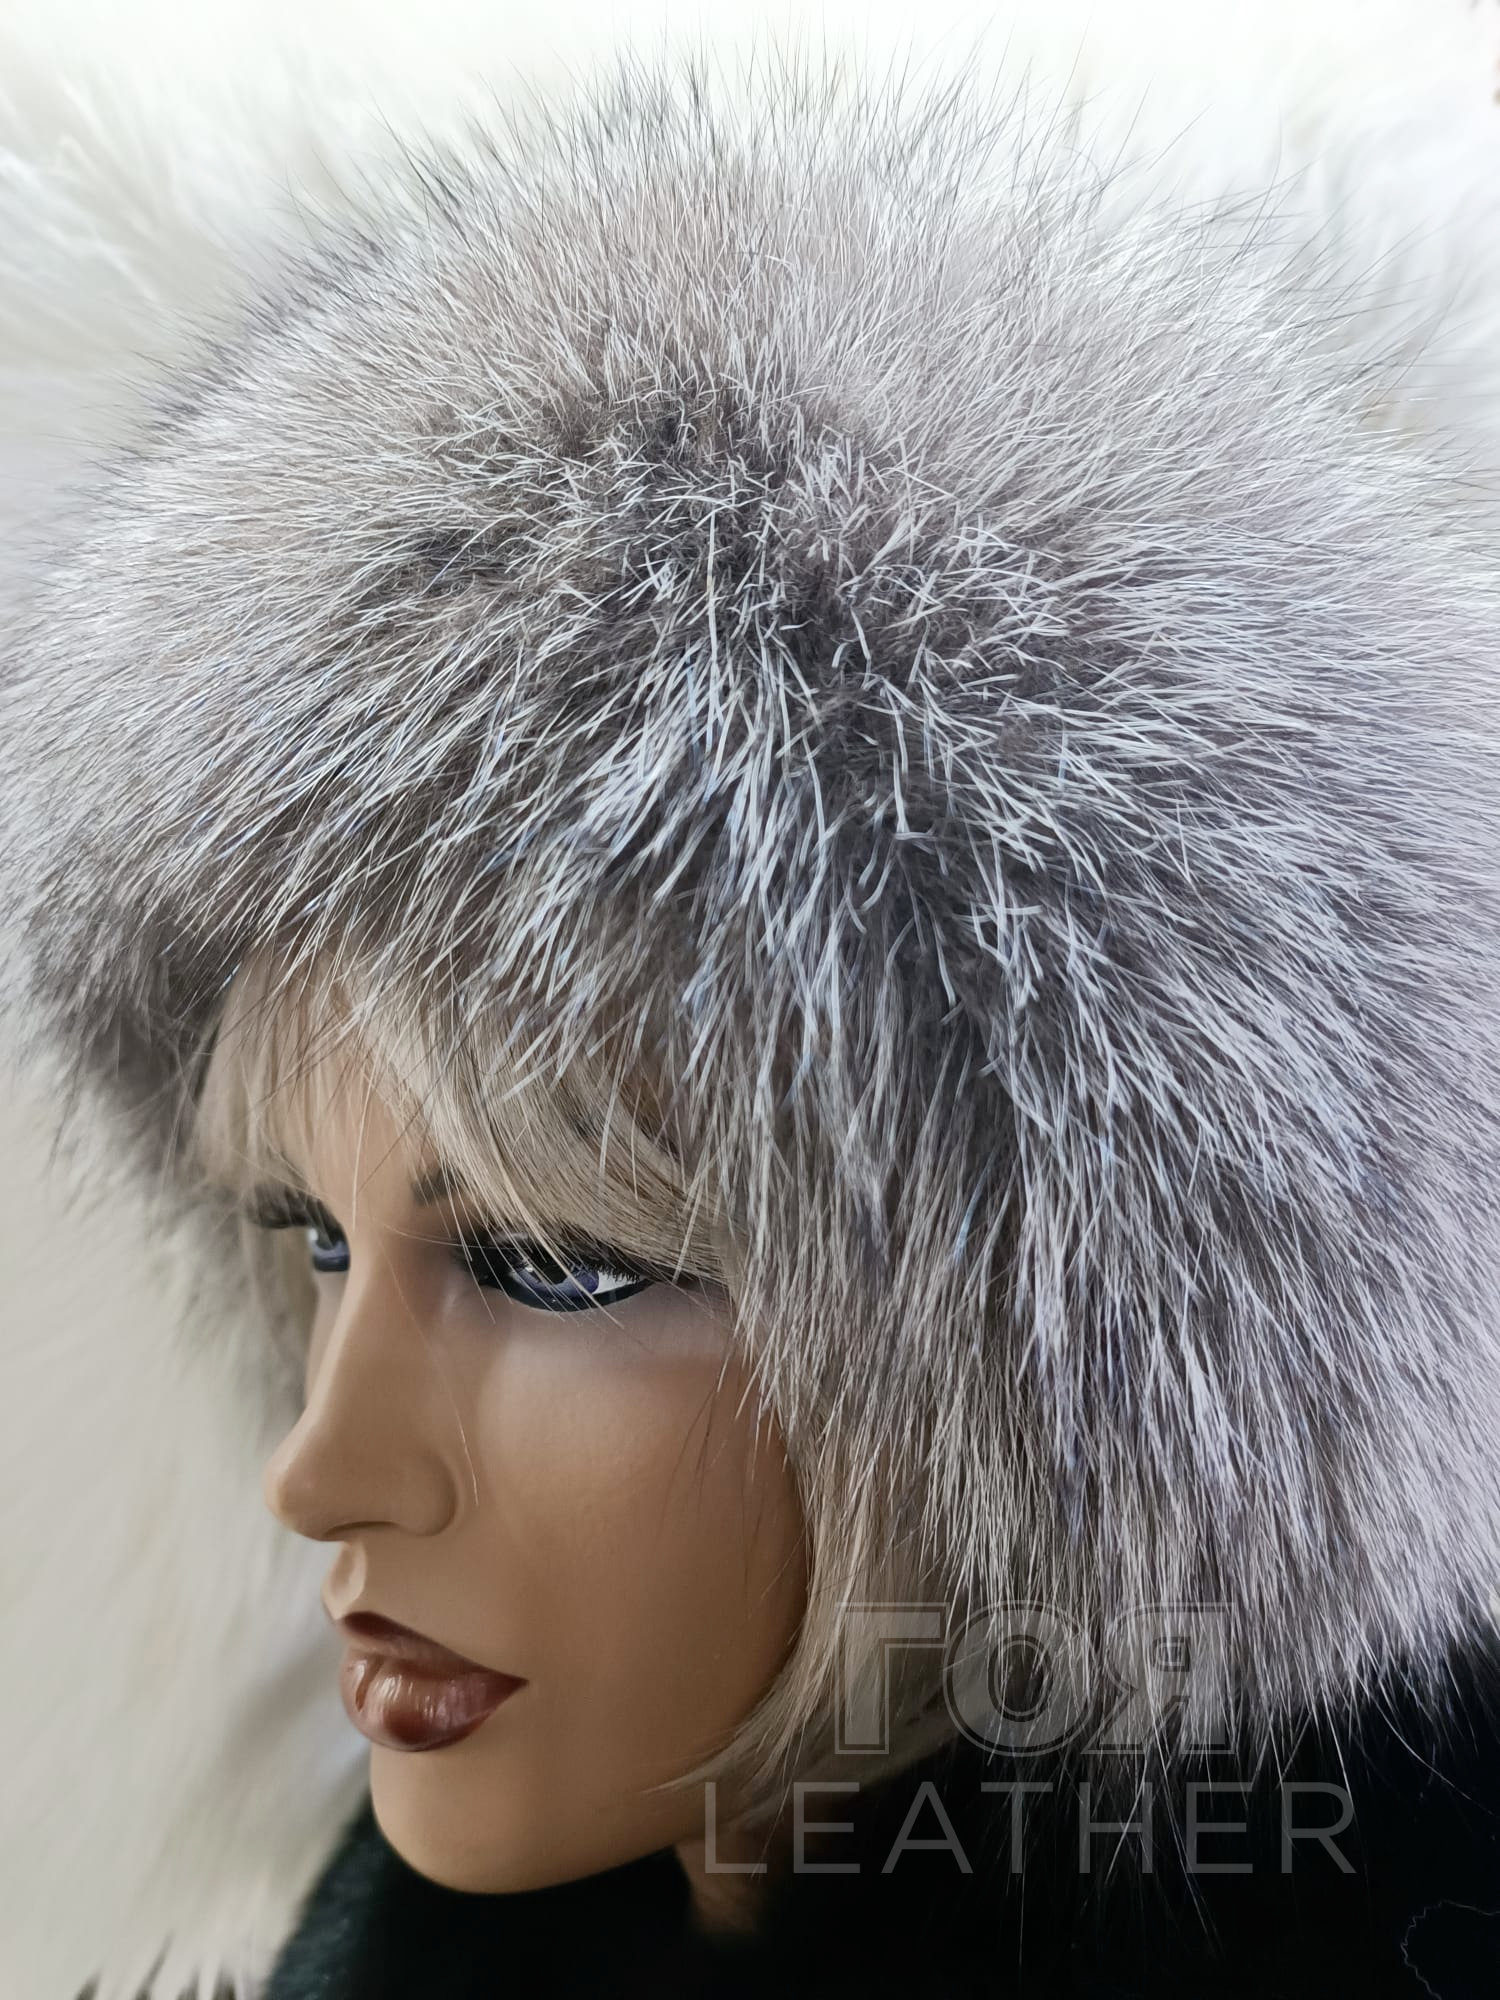 Дамска шапка - сребърна лисица от ГОЯ Leather. Луксозна дамска шапка изработена в комбинация от агнешка на па и натурална сребърна лисица.